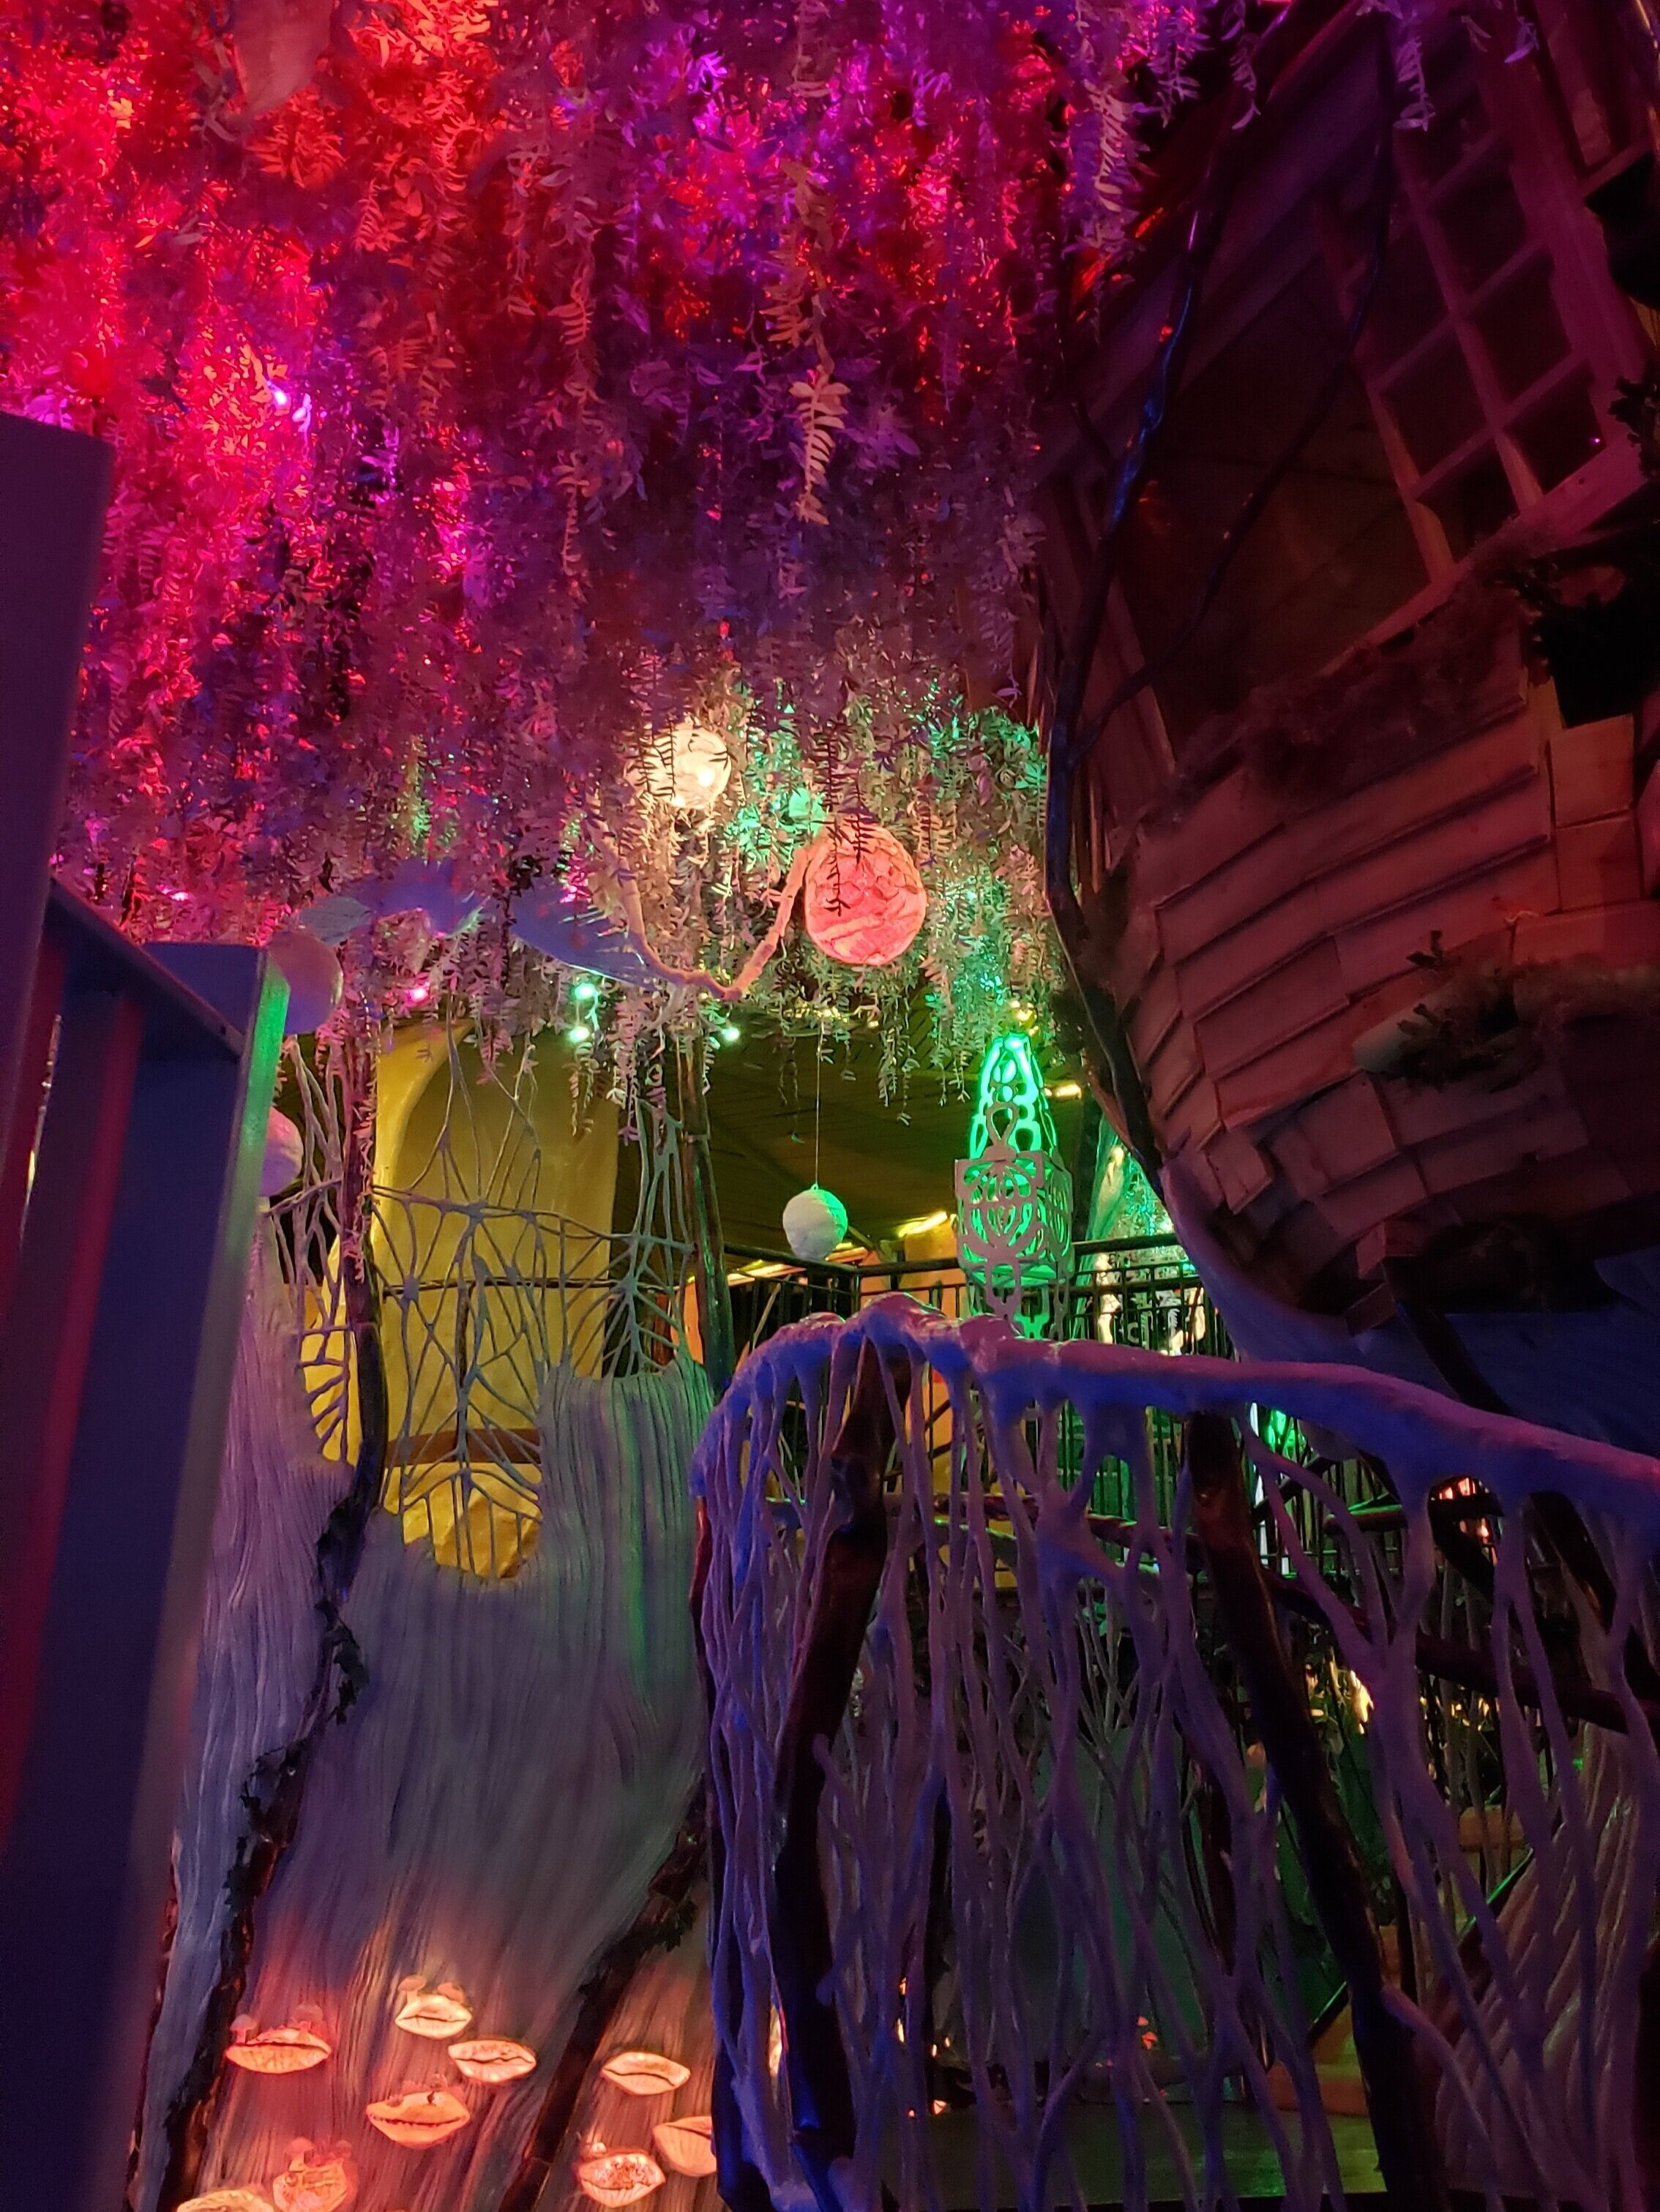 Futuristic multicolored tree in an interactive art exhibit